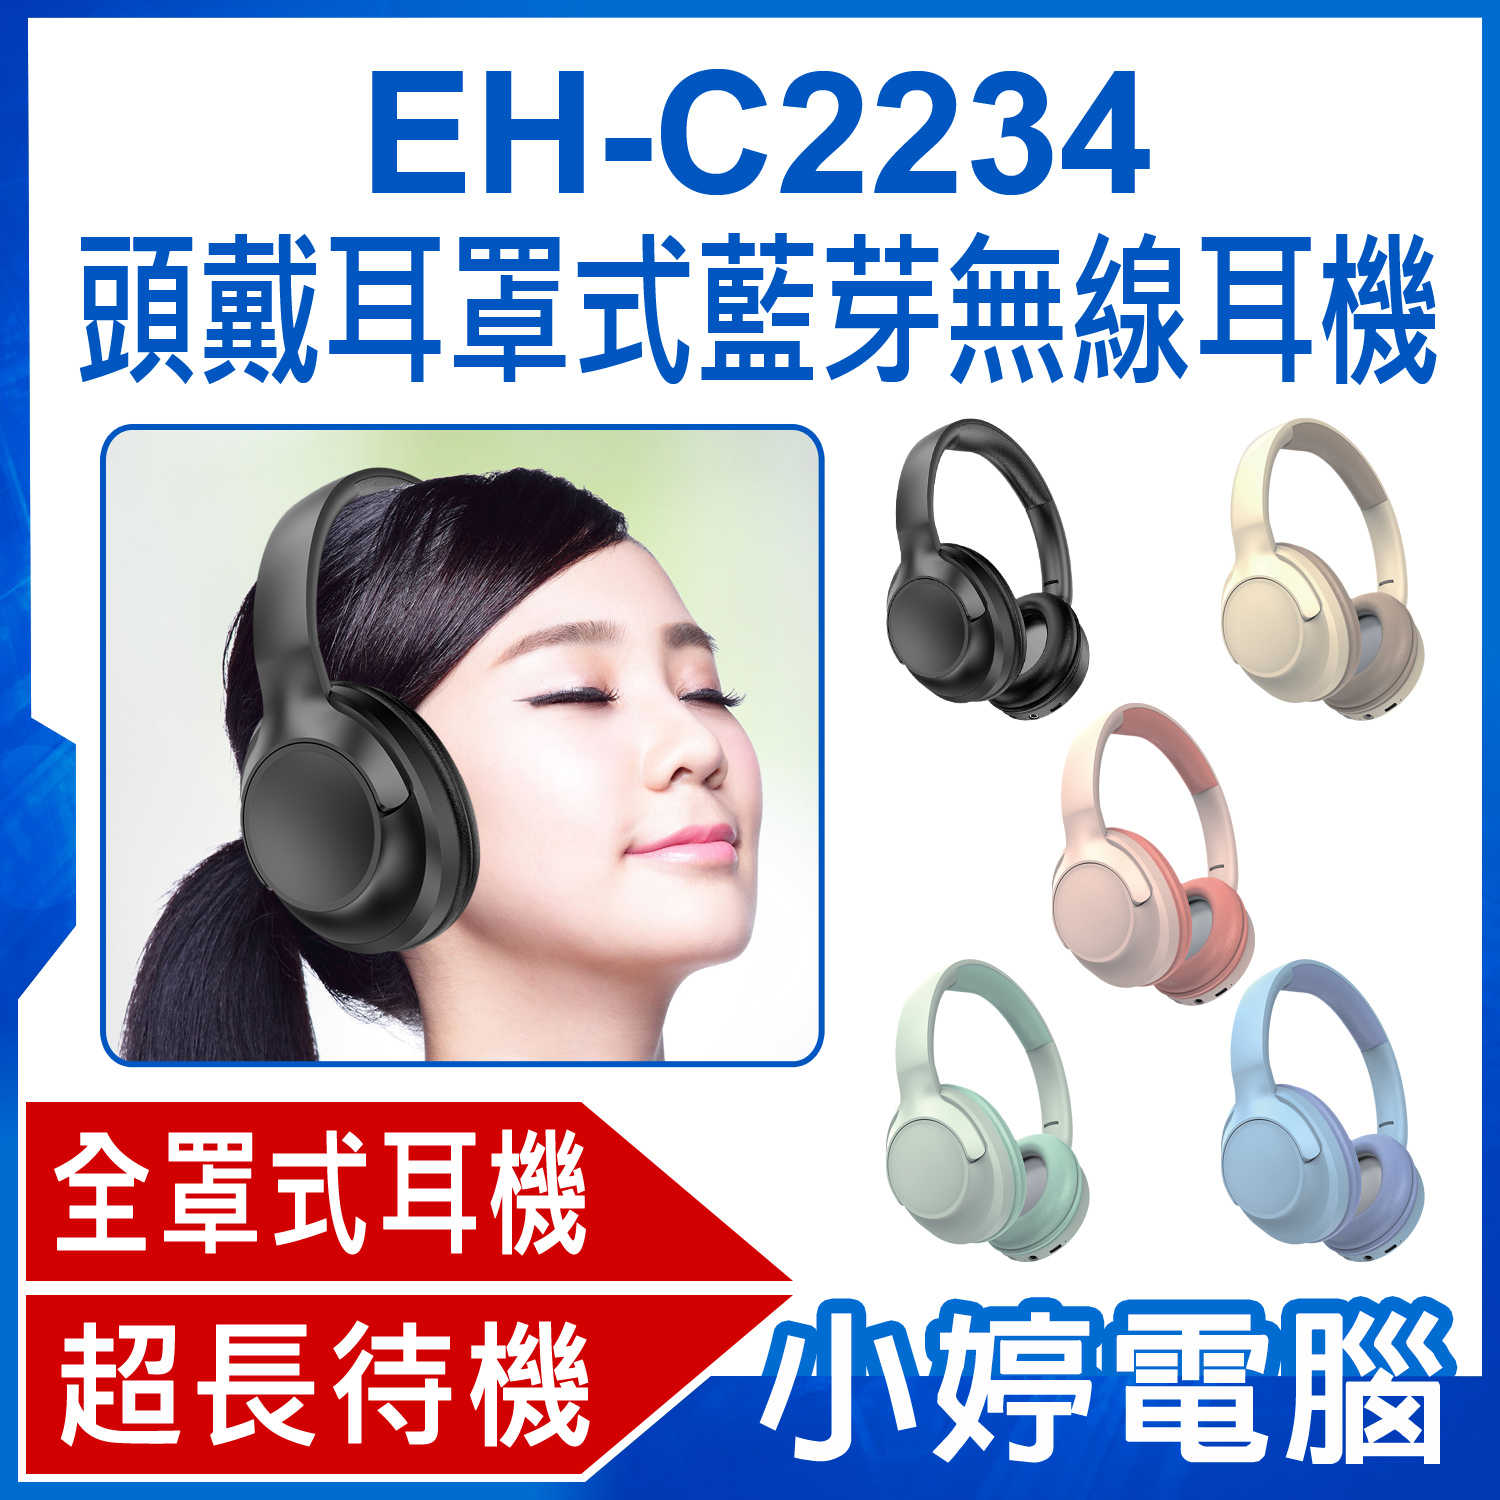 【小婷電腦】EH-C2234 頭戴耳罩式藍芽無線耳機 重低音全罩式降噪耳機 頭戴式耳機 立體聲無線運動耳麥 超長待機